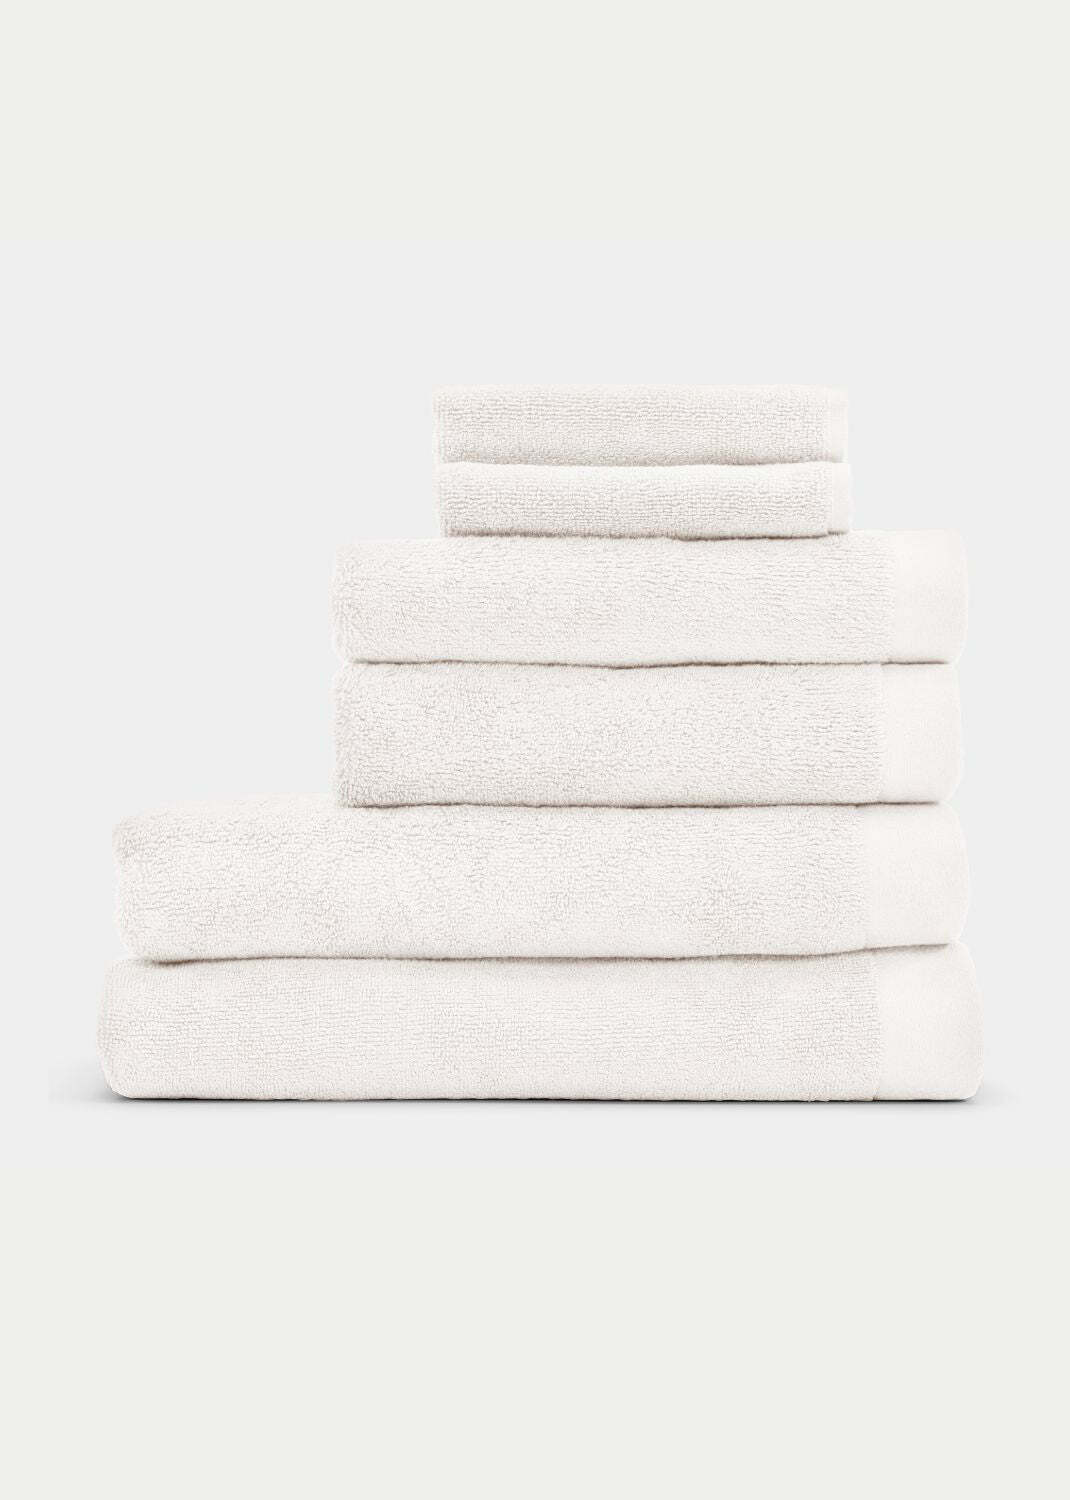 Handtuch Baumwolle Weiß 30 x 50 cm 0